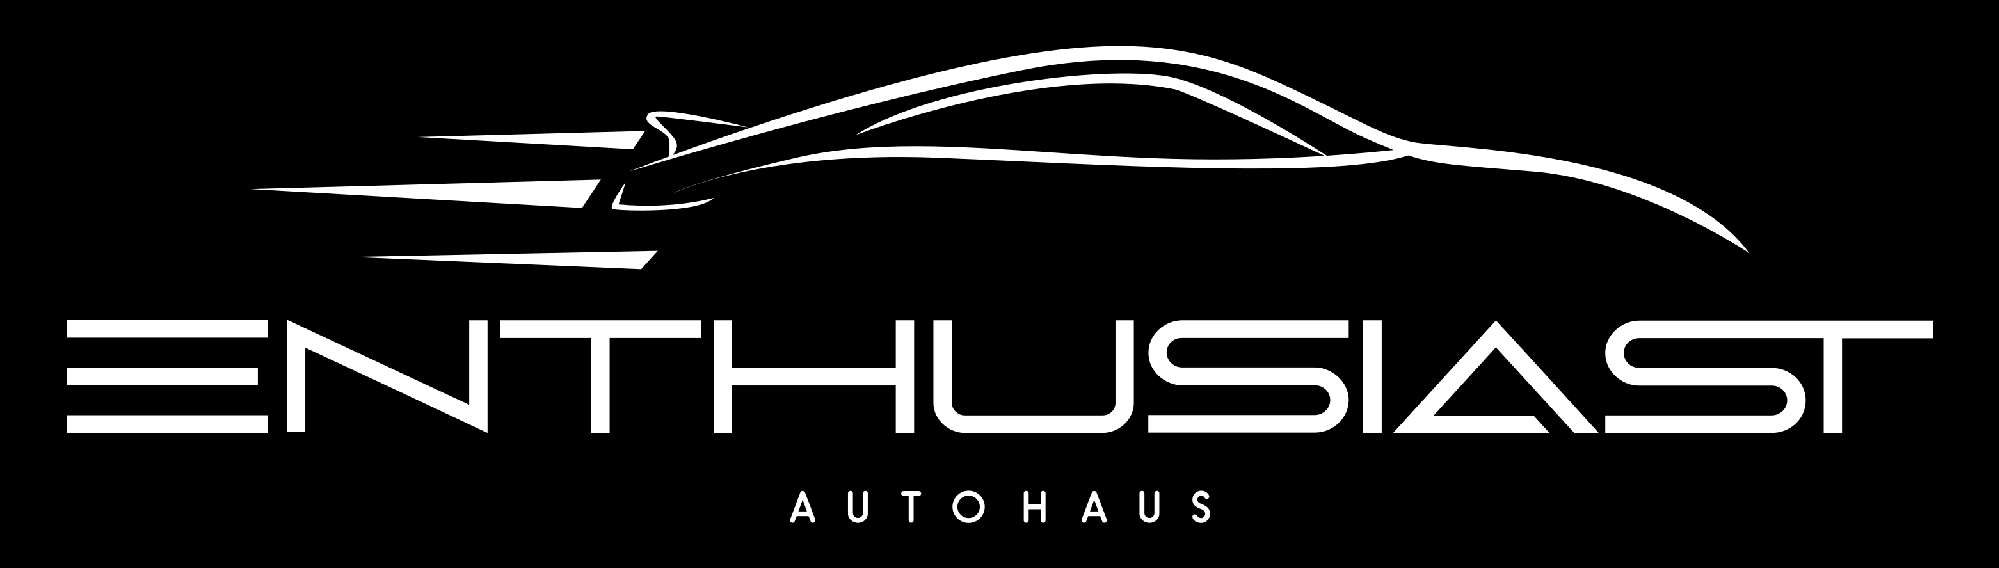 Home - Autohaus Website